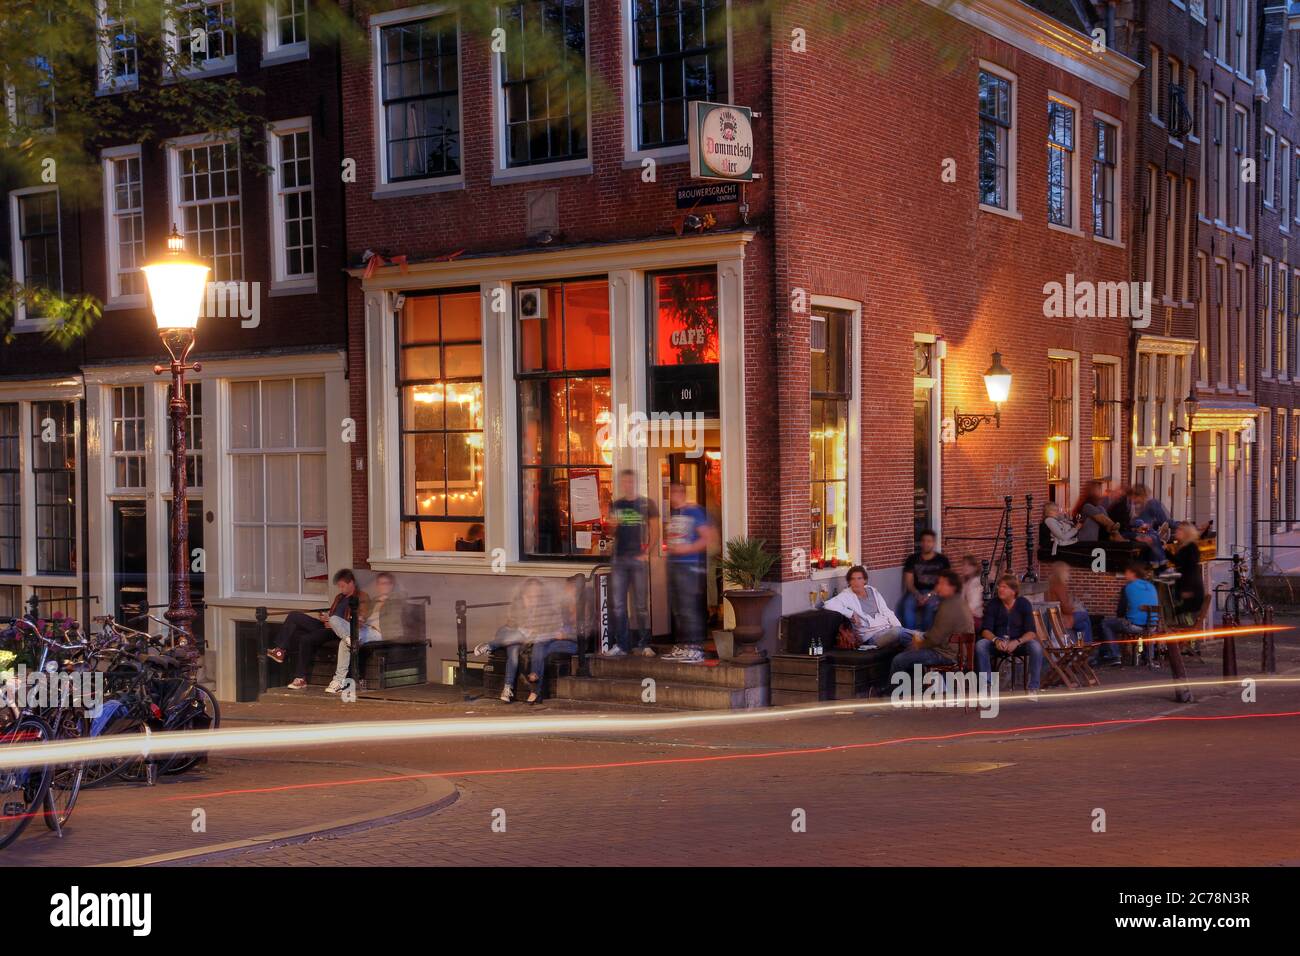 Sommerabende im Amsterdamer Grachtenviertel mit Foucus in einer bei jungen Leuten beliebten Lounge-Bar. Stockfoto